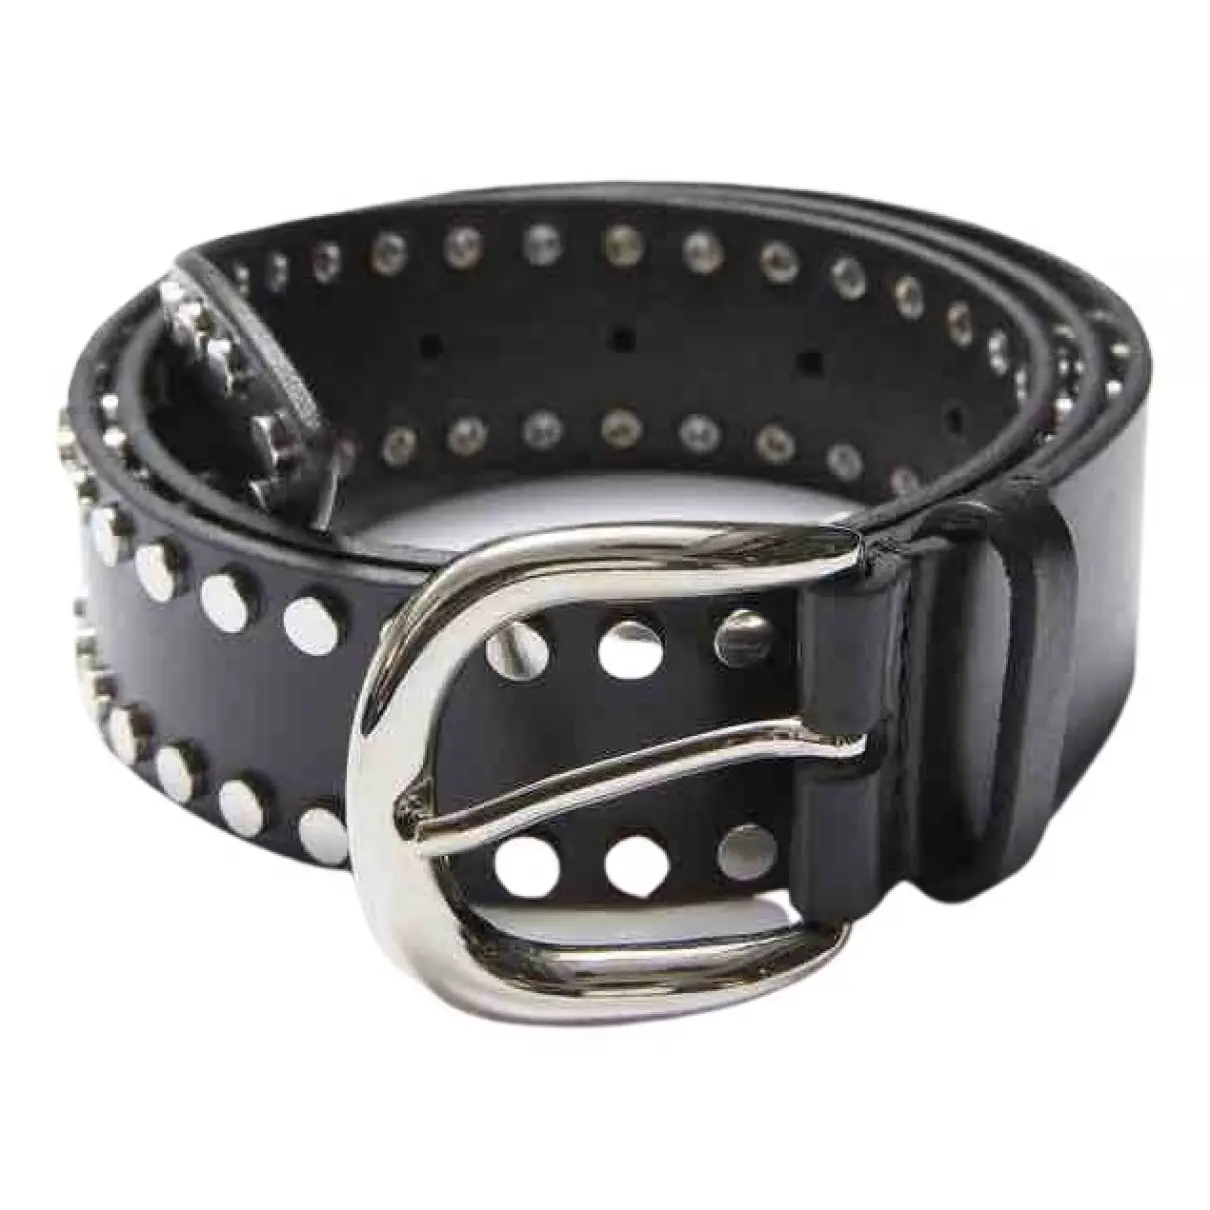 Isabel Marant Leather belt for sale